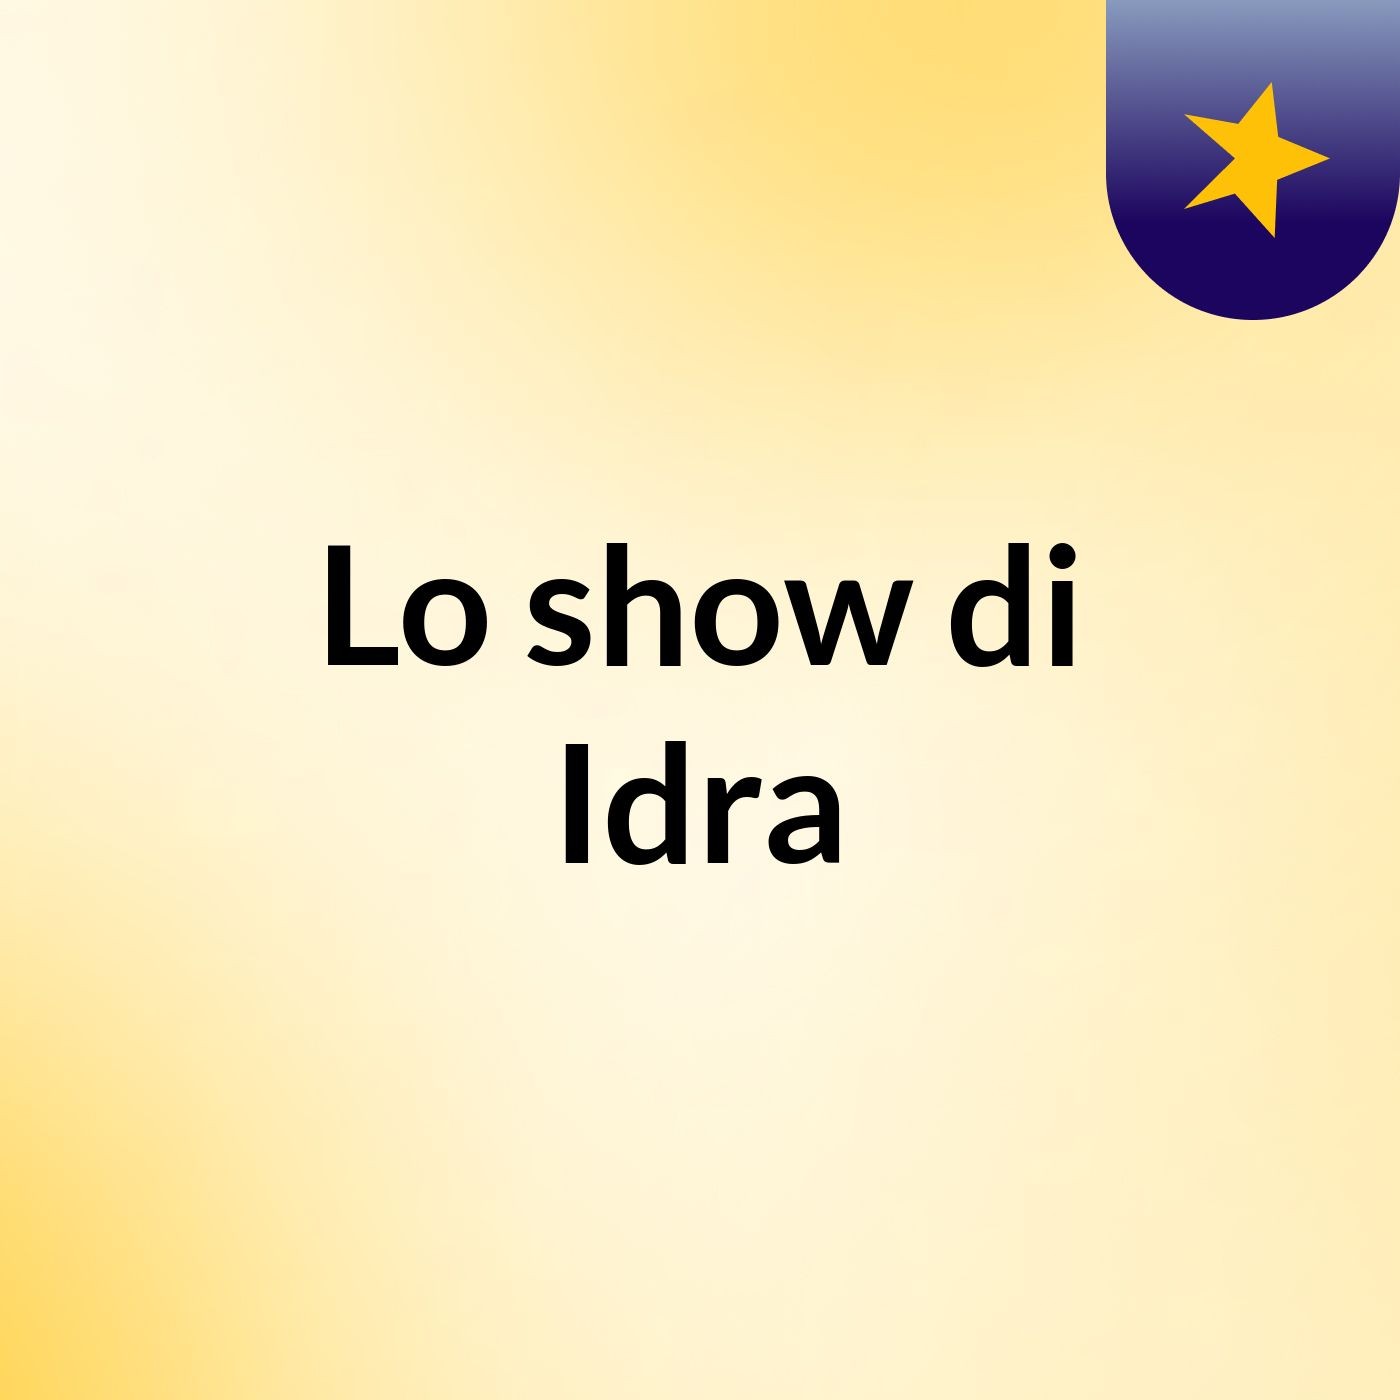 Lo show di Idra